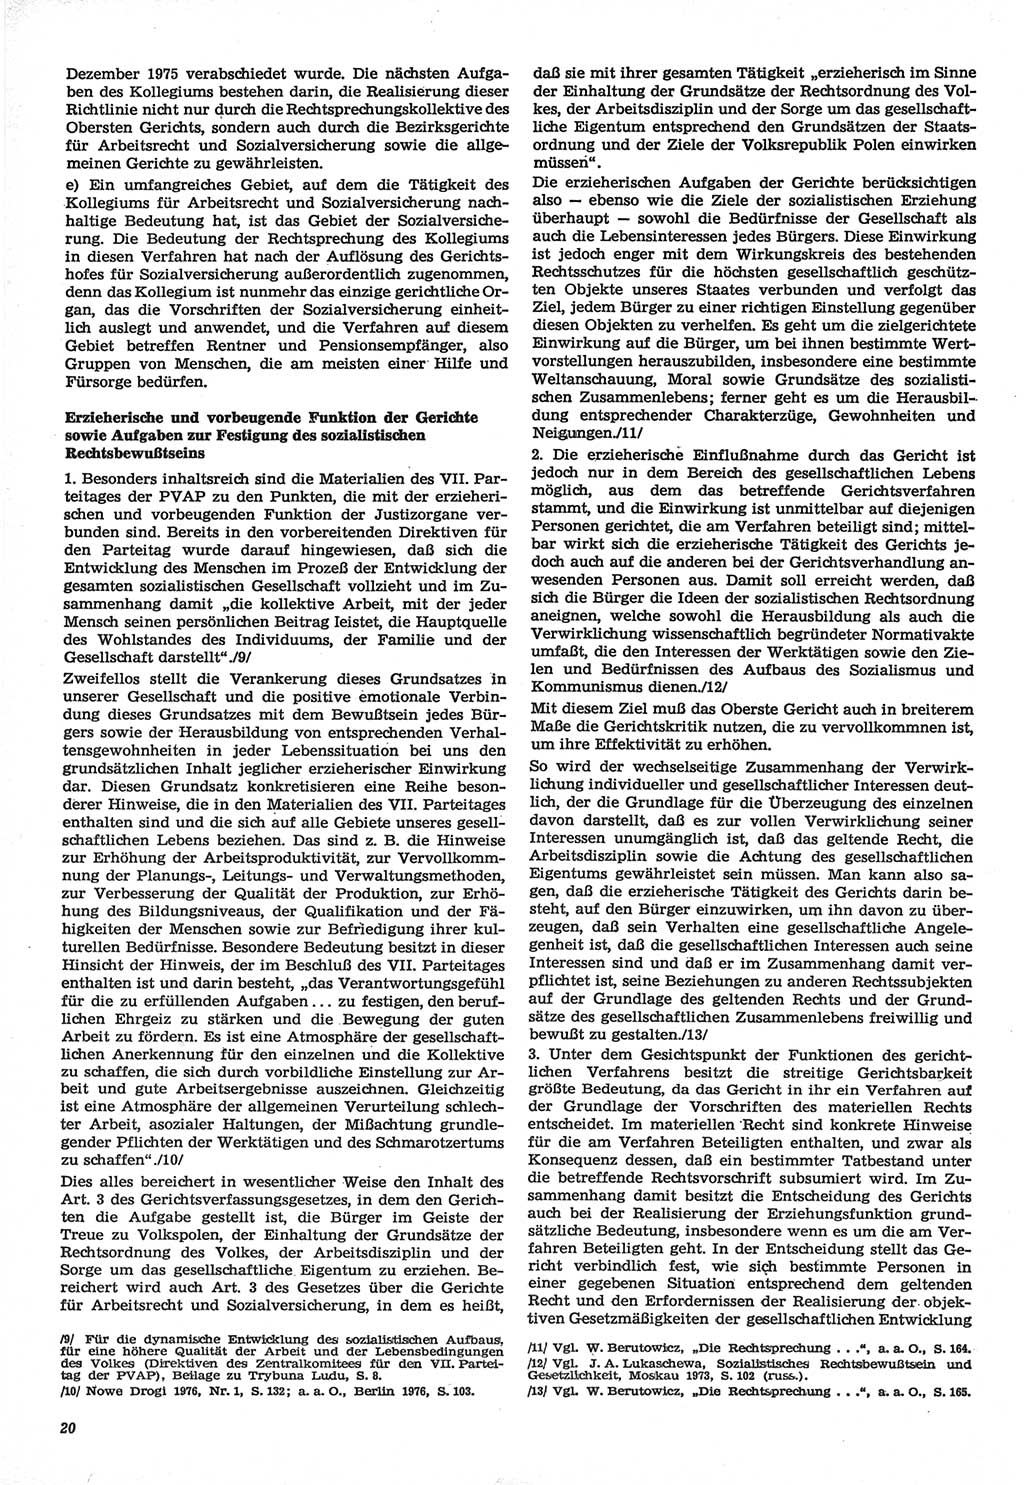 Neue Justiz (NJ), Zeitschrift für Recht und Rechtswissenschaft-Zeitschrift, sozialistisches Recht und Gesetzlichkeit, 31. Jahrgang 1977, Seite 20 (NJ DDR 1977, S. 20)